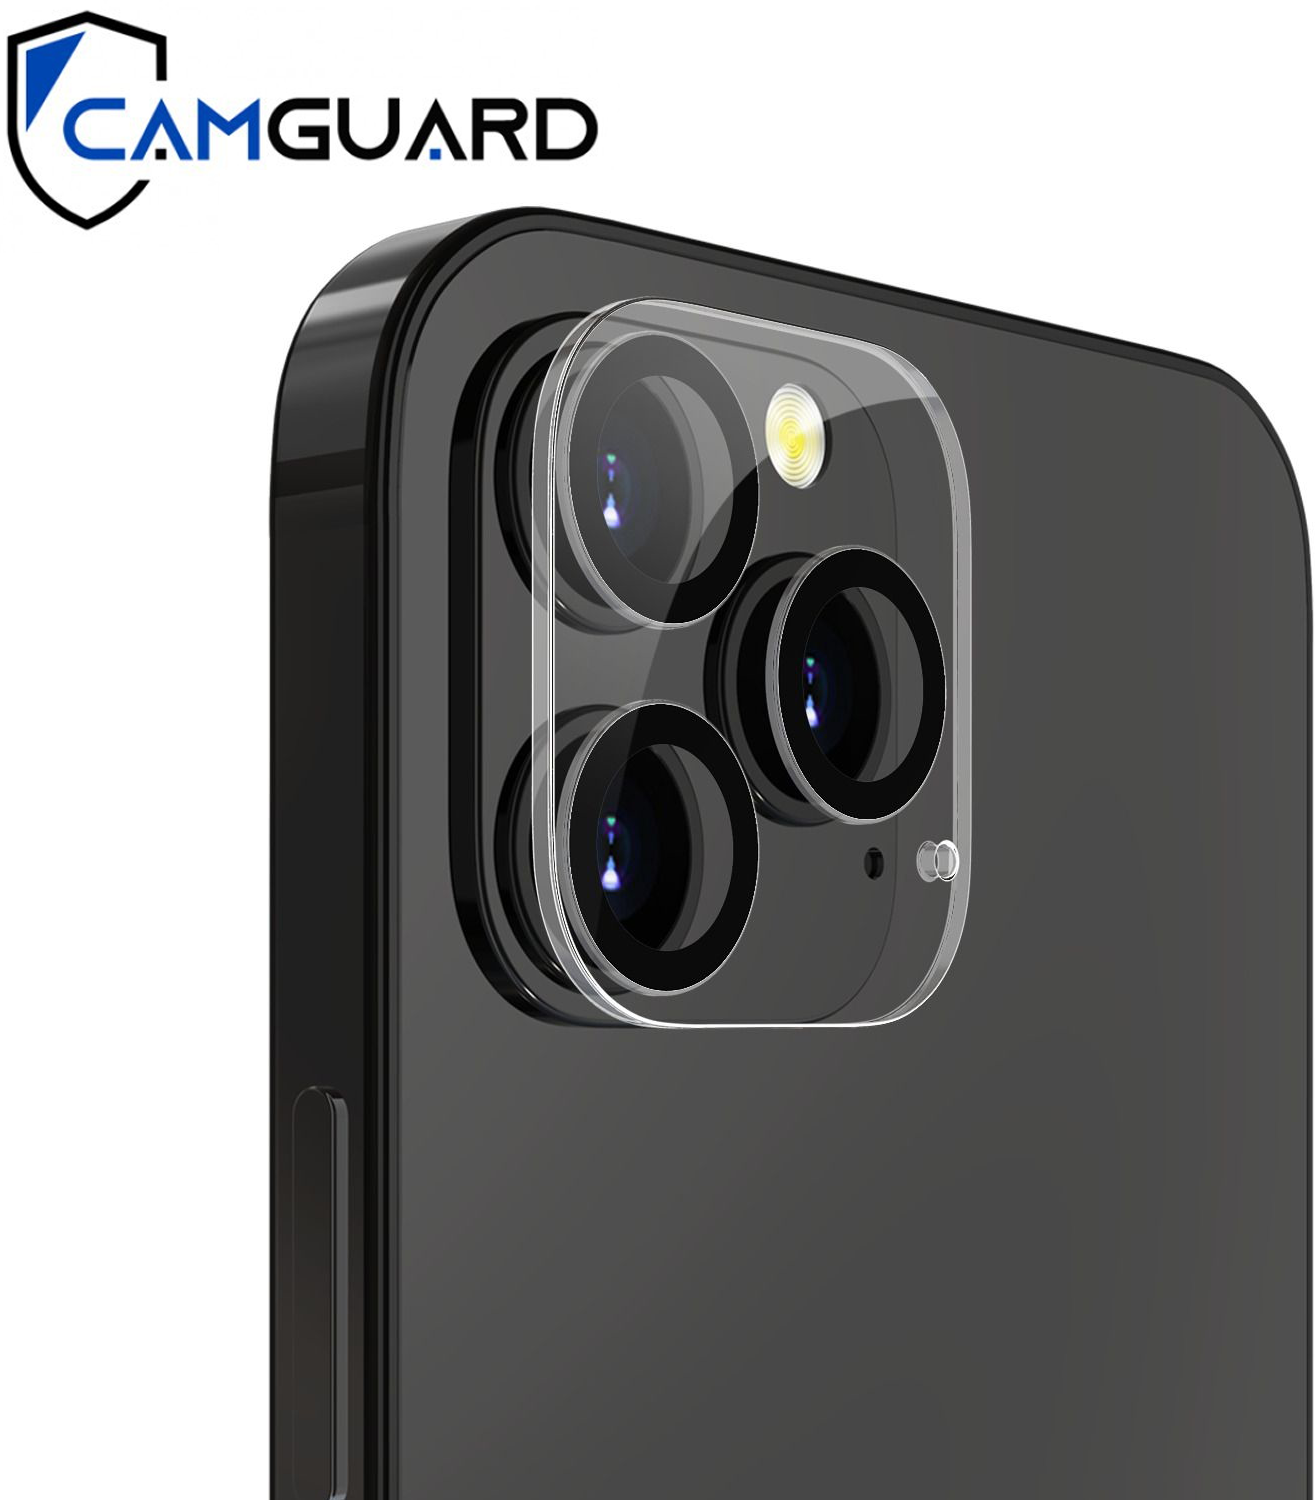 Vitre de protection caméra - iPhone 12 Pro Max - Acheter sur PhoneLook